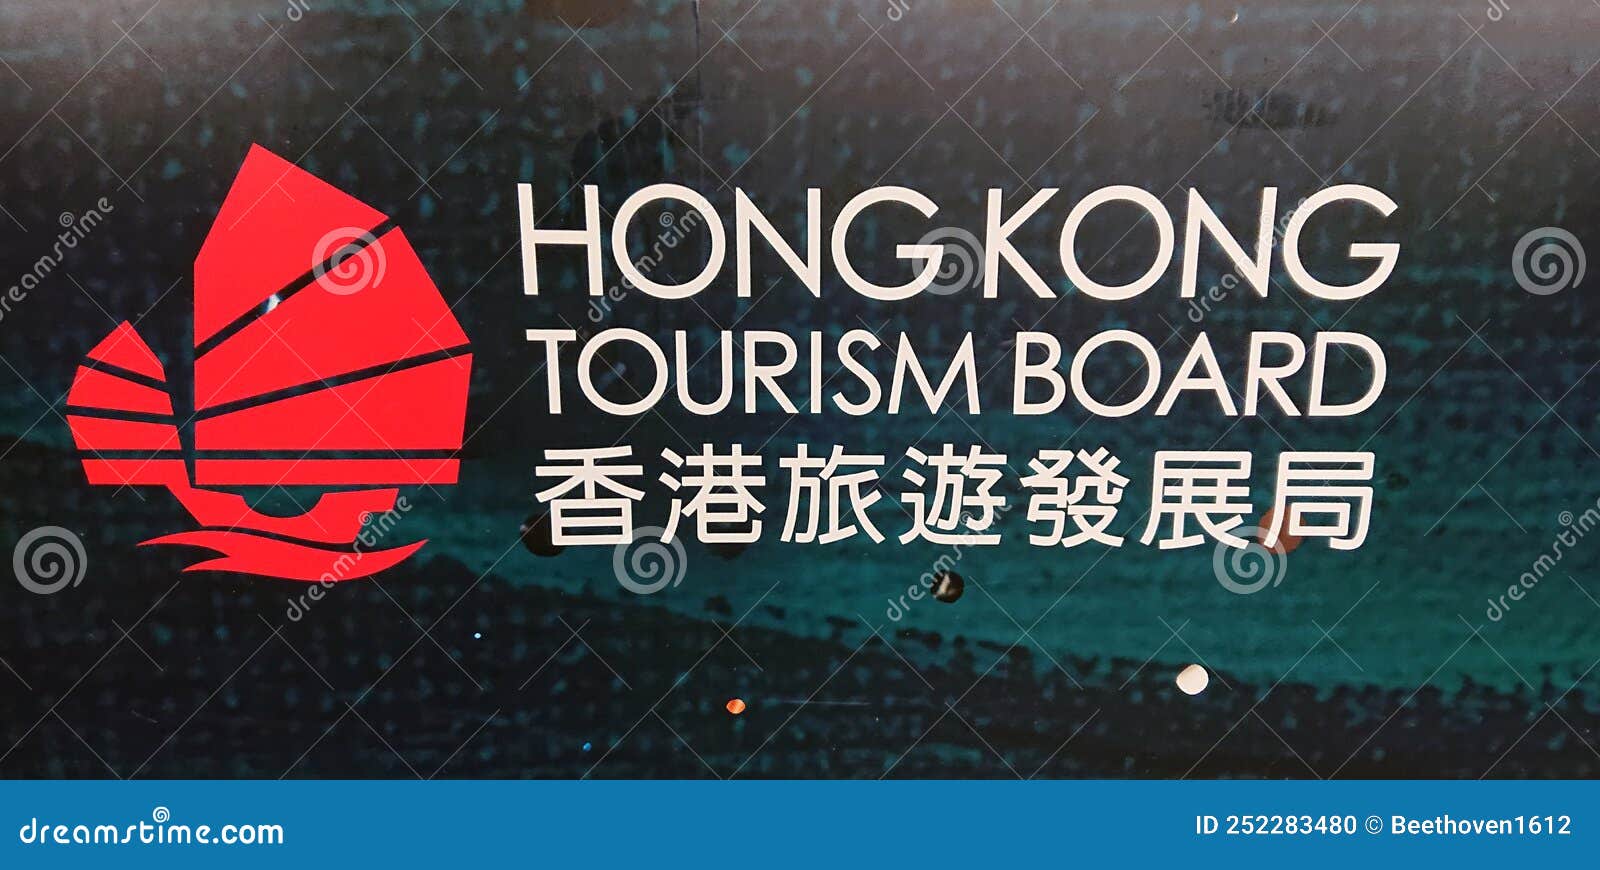 hong kong tourism authority